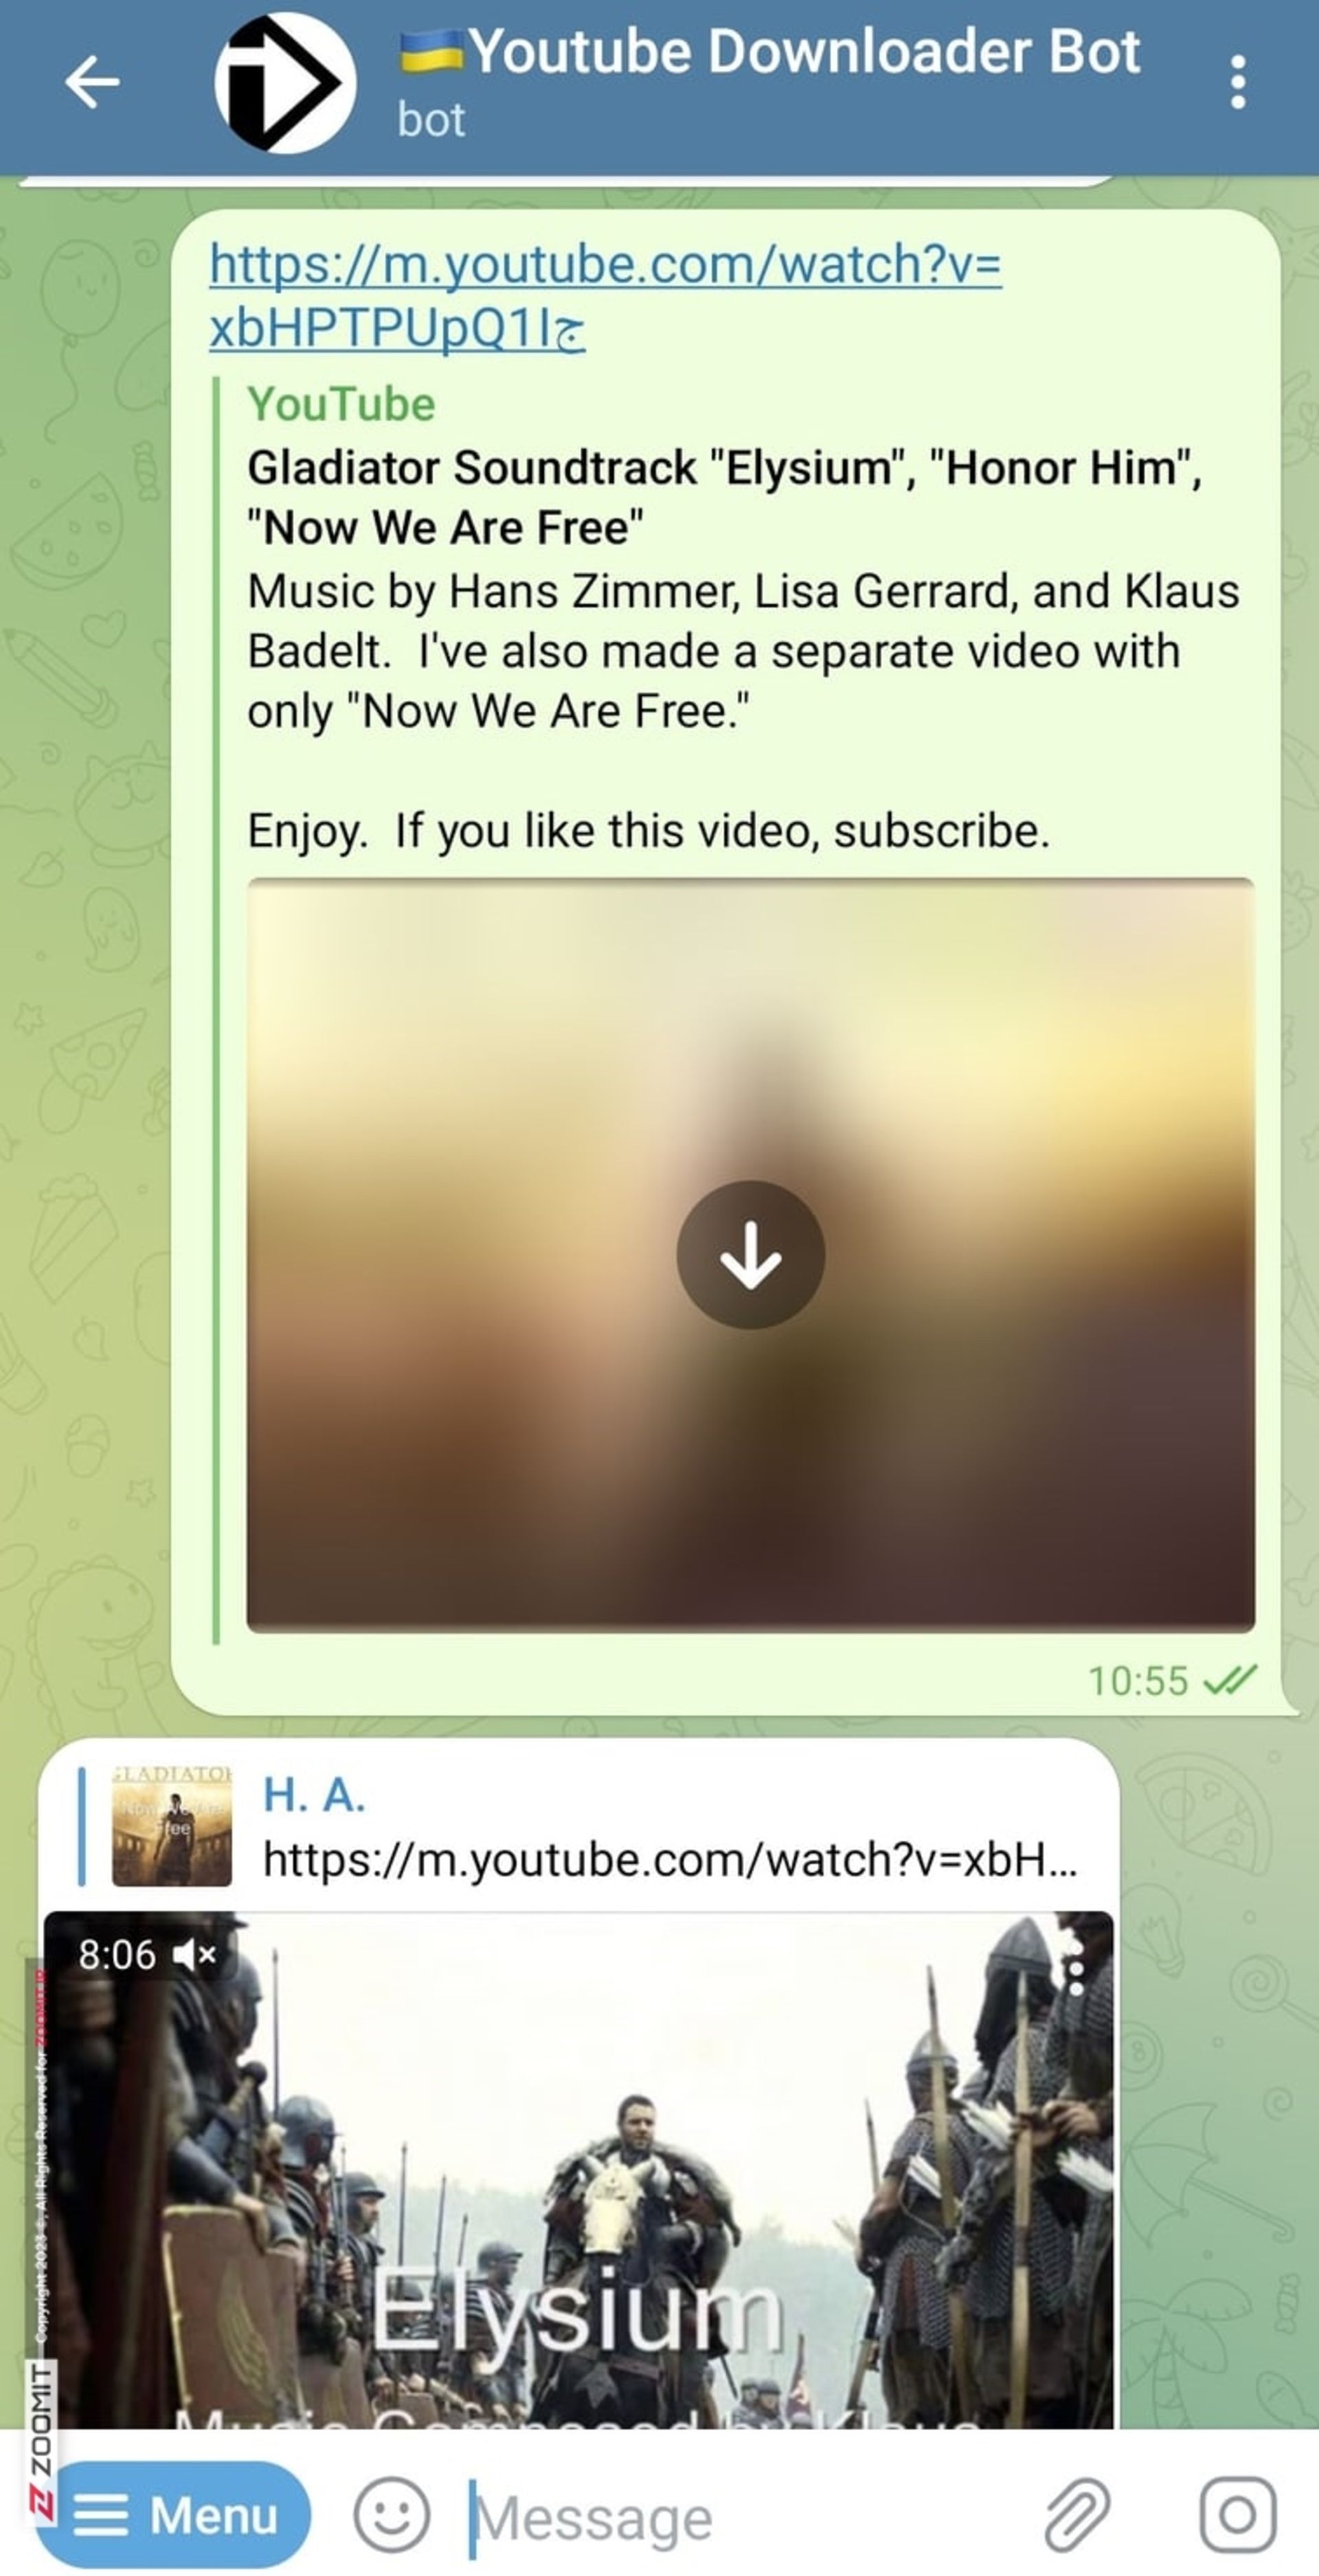 مرحله سوم دانلود فیلم یوتیوب با ربات تلگرامی youtube downloader bot